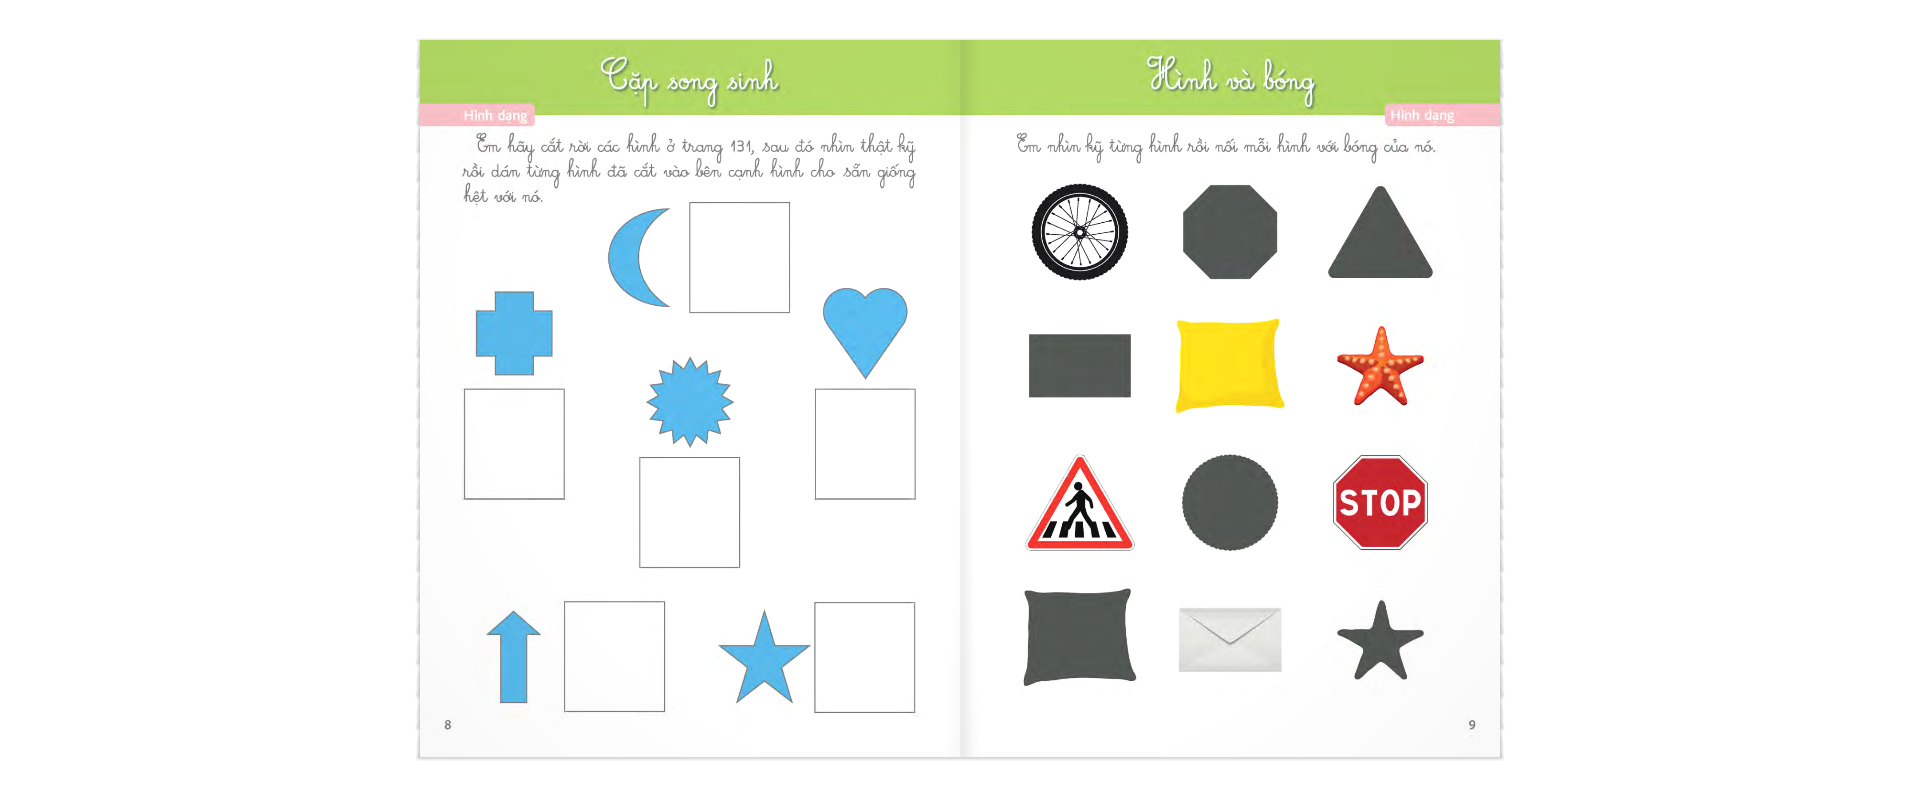 Sách Bài Tập Theo Phương Pháp Montessori - Phát Triển Trí Tuệ Và Khả Năng Toán Học Cho Trẻ PDF